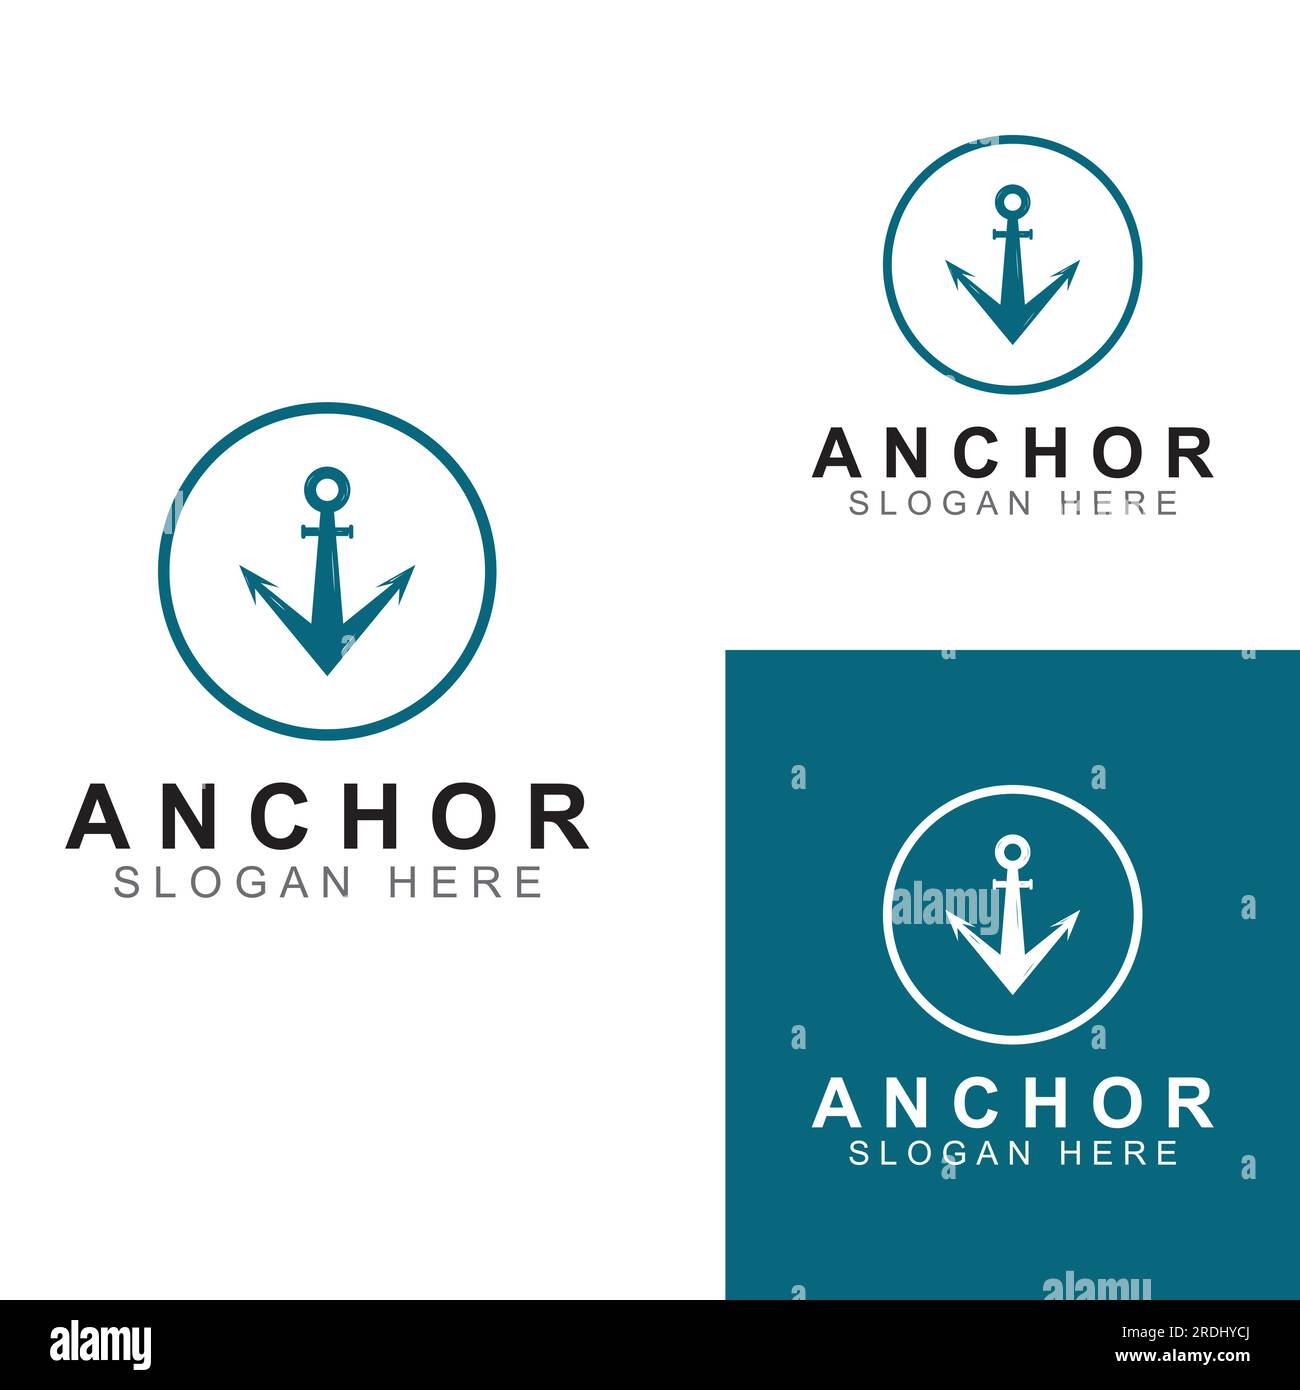 Logo and anchor symbol design vector. Stock Vector